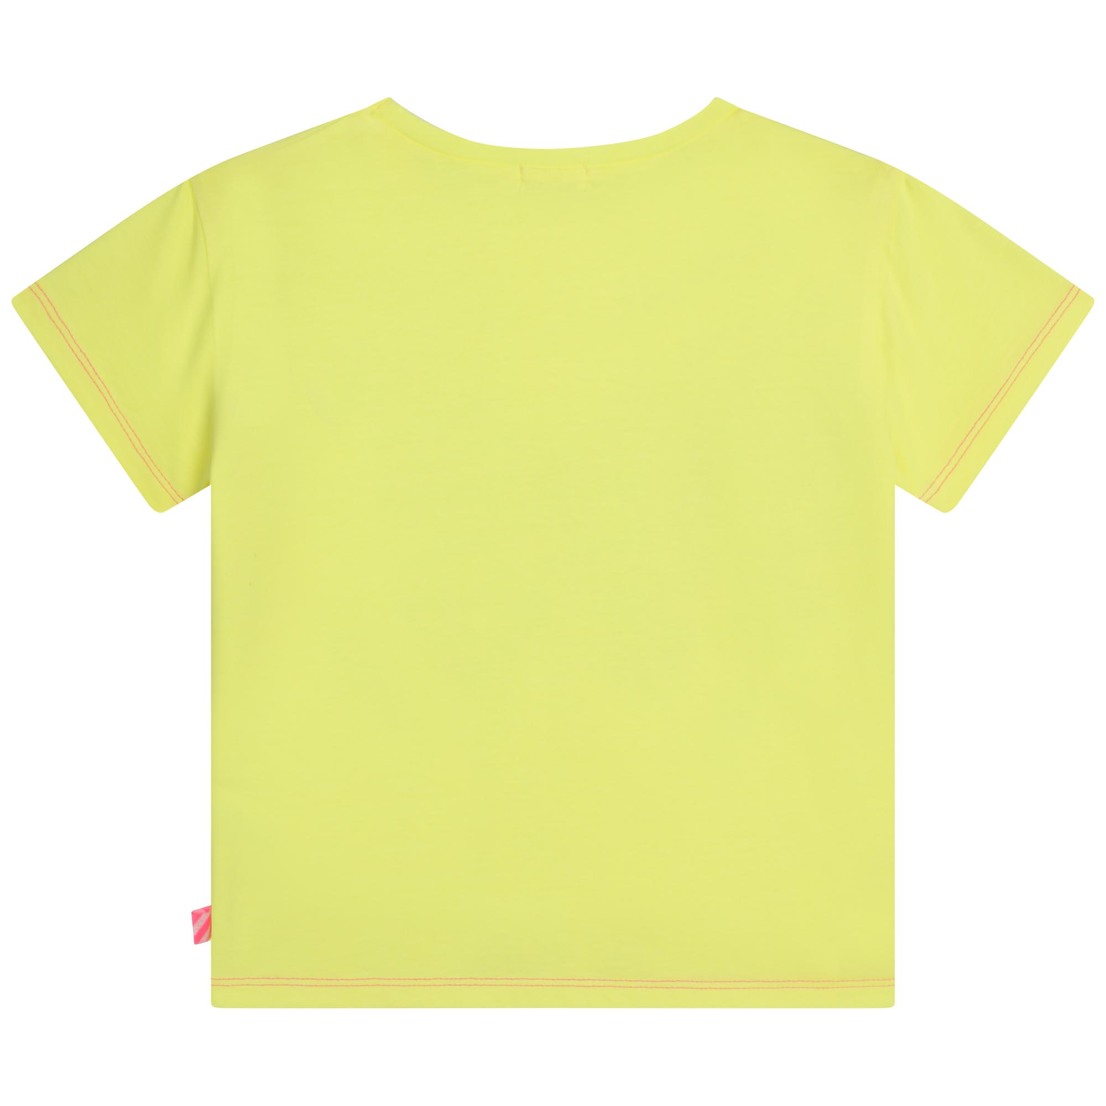 Jersey tee-shirt, short sleeves, round neckline, f